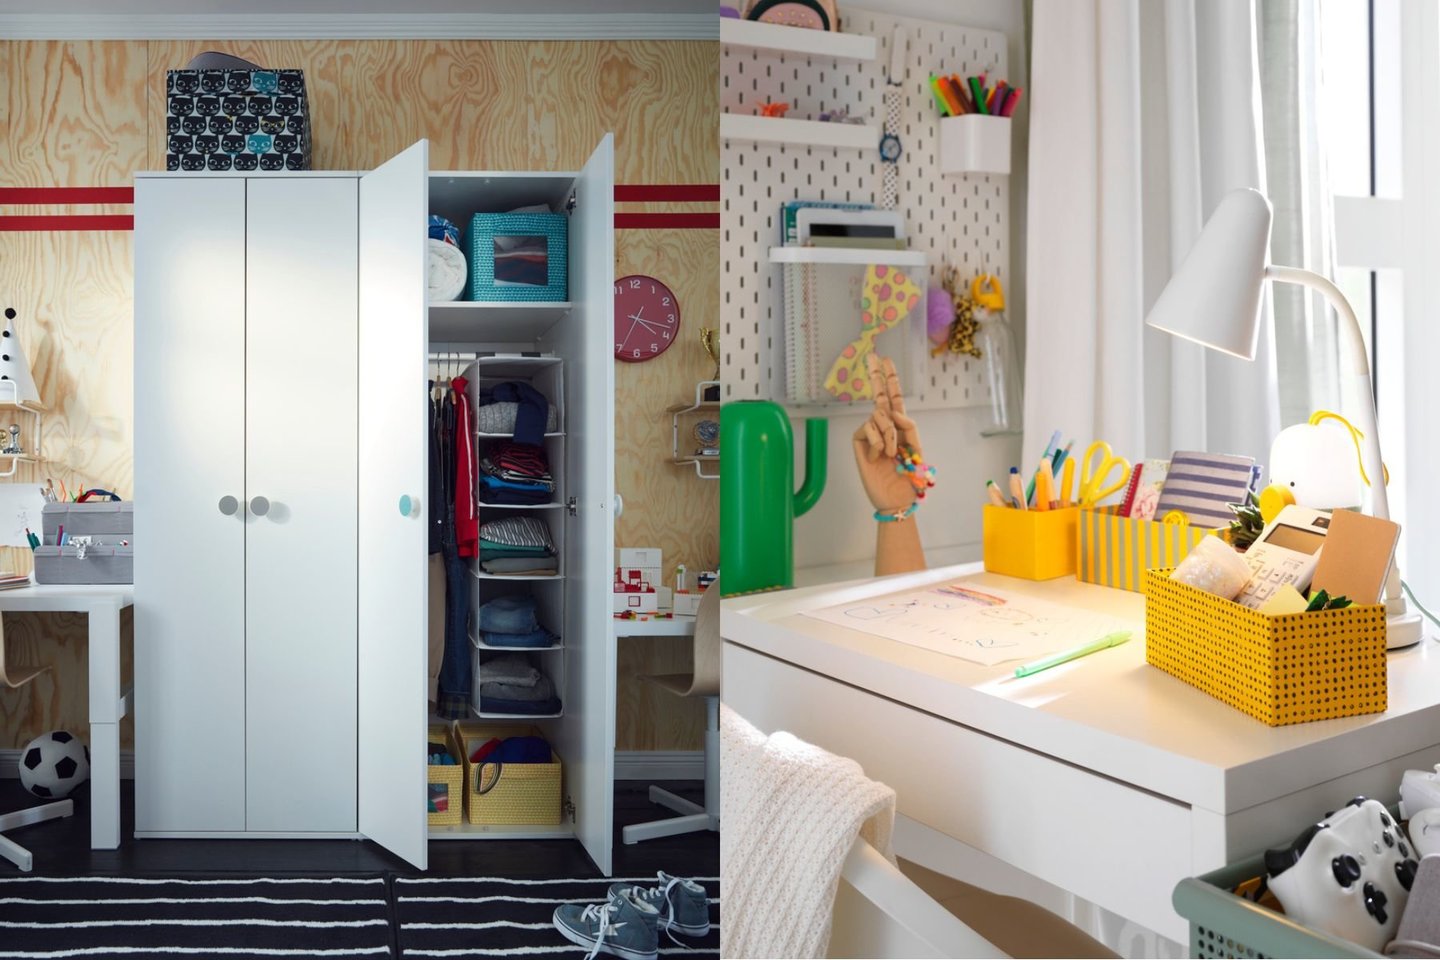 Interjero dizainerė teigia, kad dedikavus konkretiems daiktams konkrečias vietas – lengviau palaikyti tvarką ne tik tėvams, bet ir tvarkytis patiems vaikams.<br>IKEA nuotr.